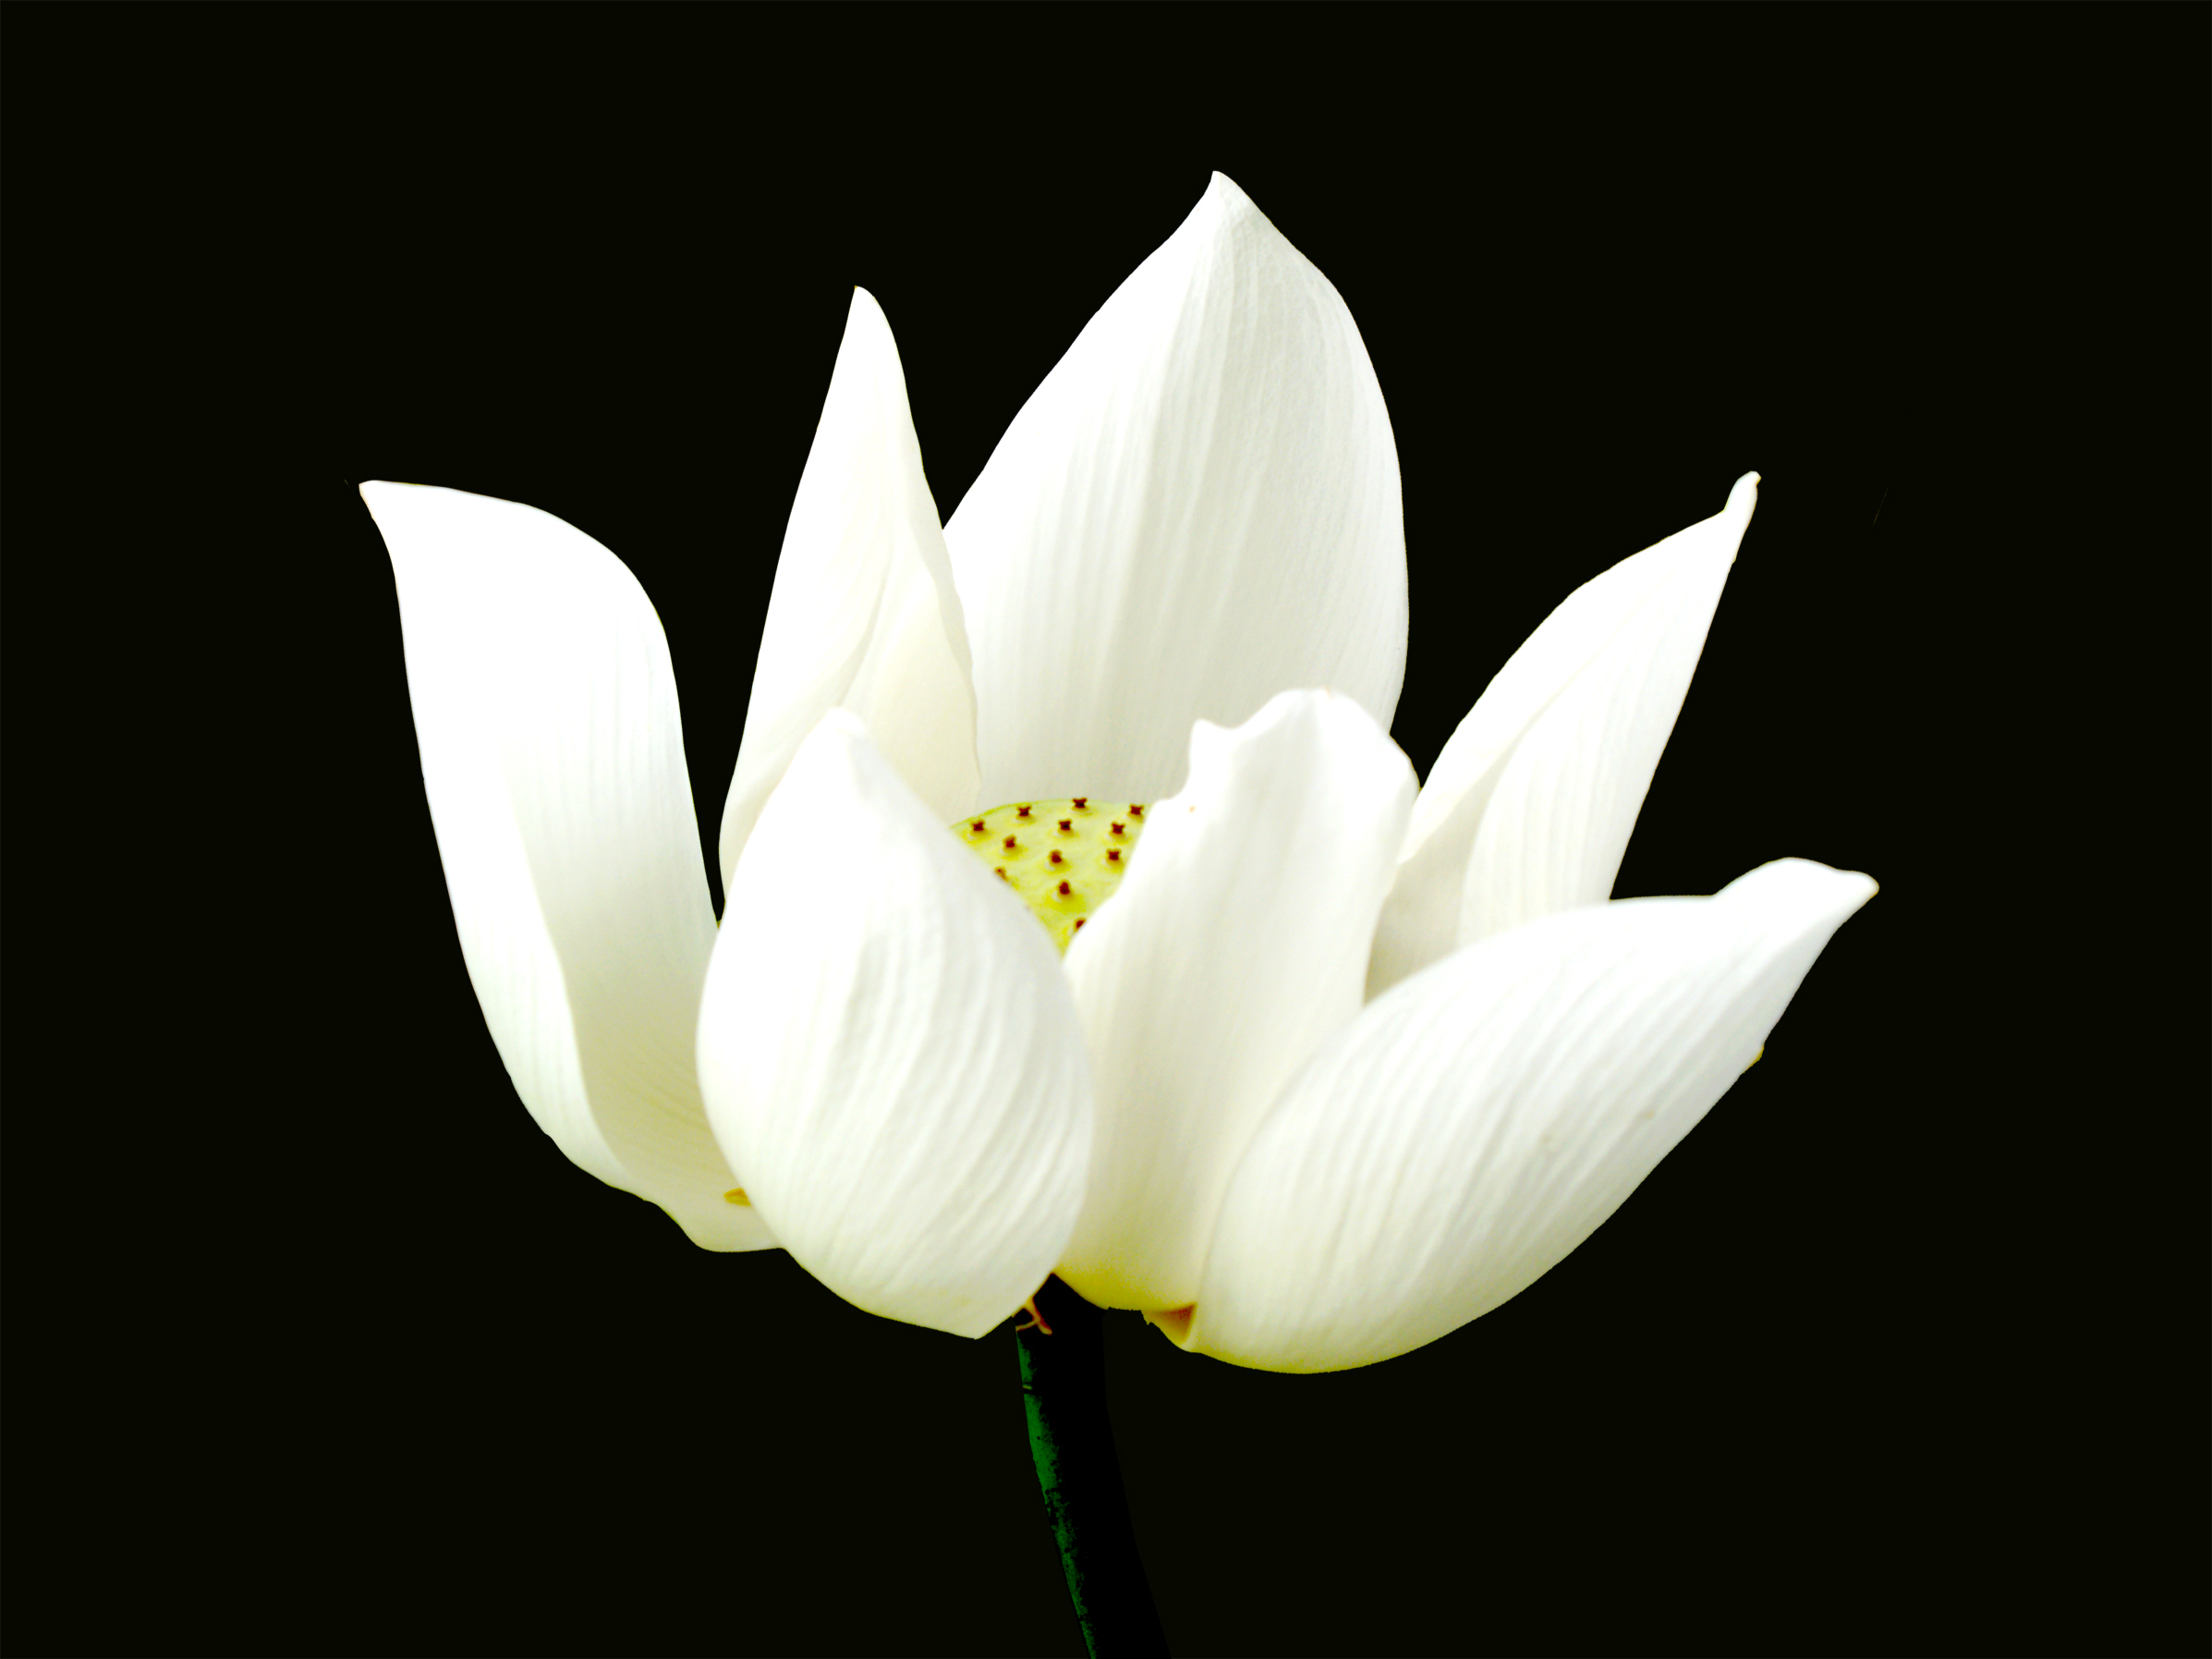 Hoa Sen white nền đen ngòm tuyệt đẹp